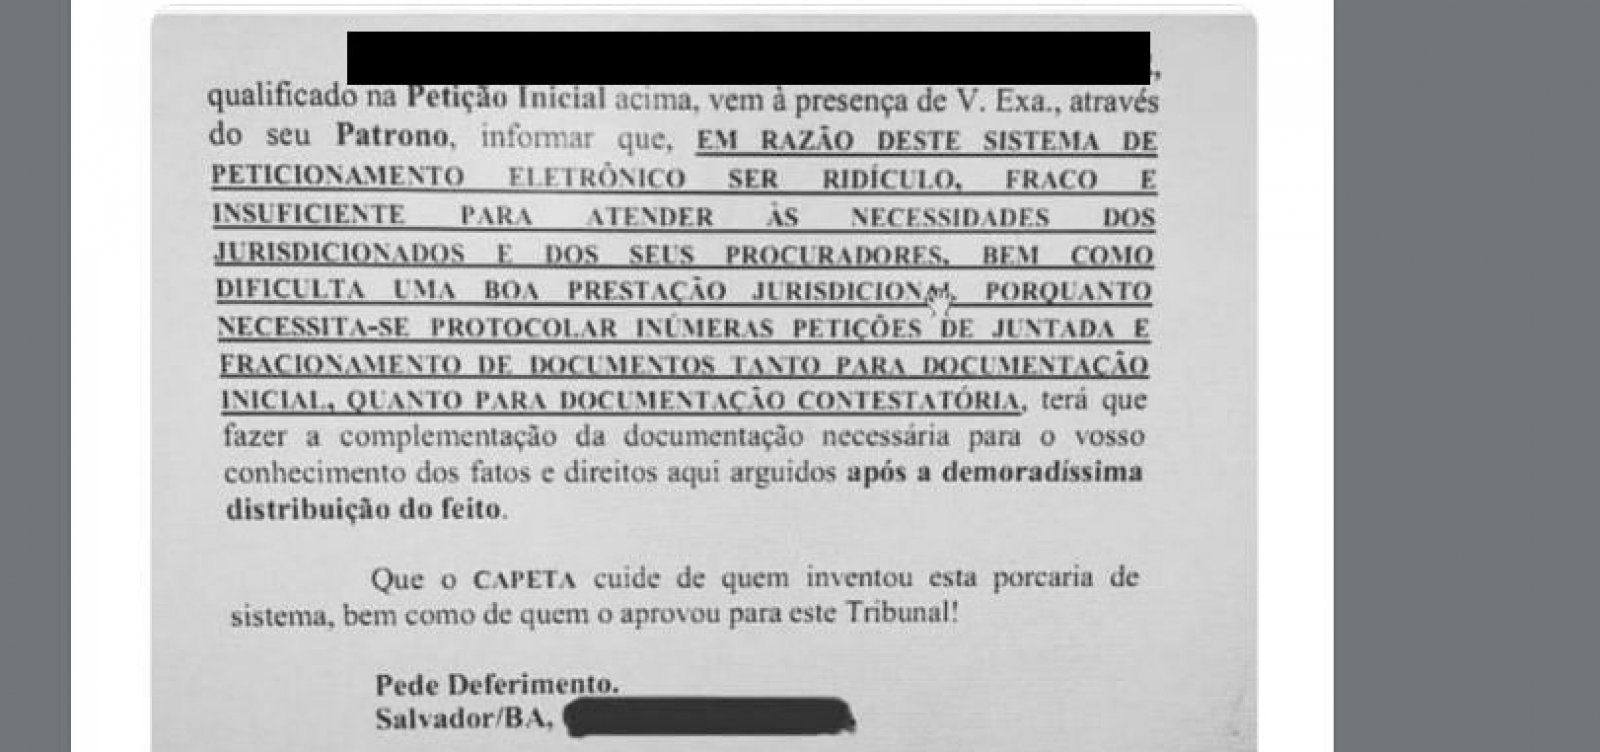 Em petição, advogado baiano pede que 'capeta' cuide de quem aprovou PJE